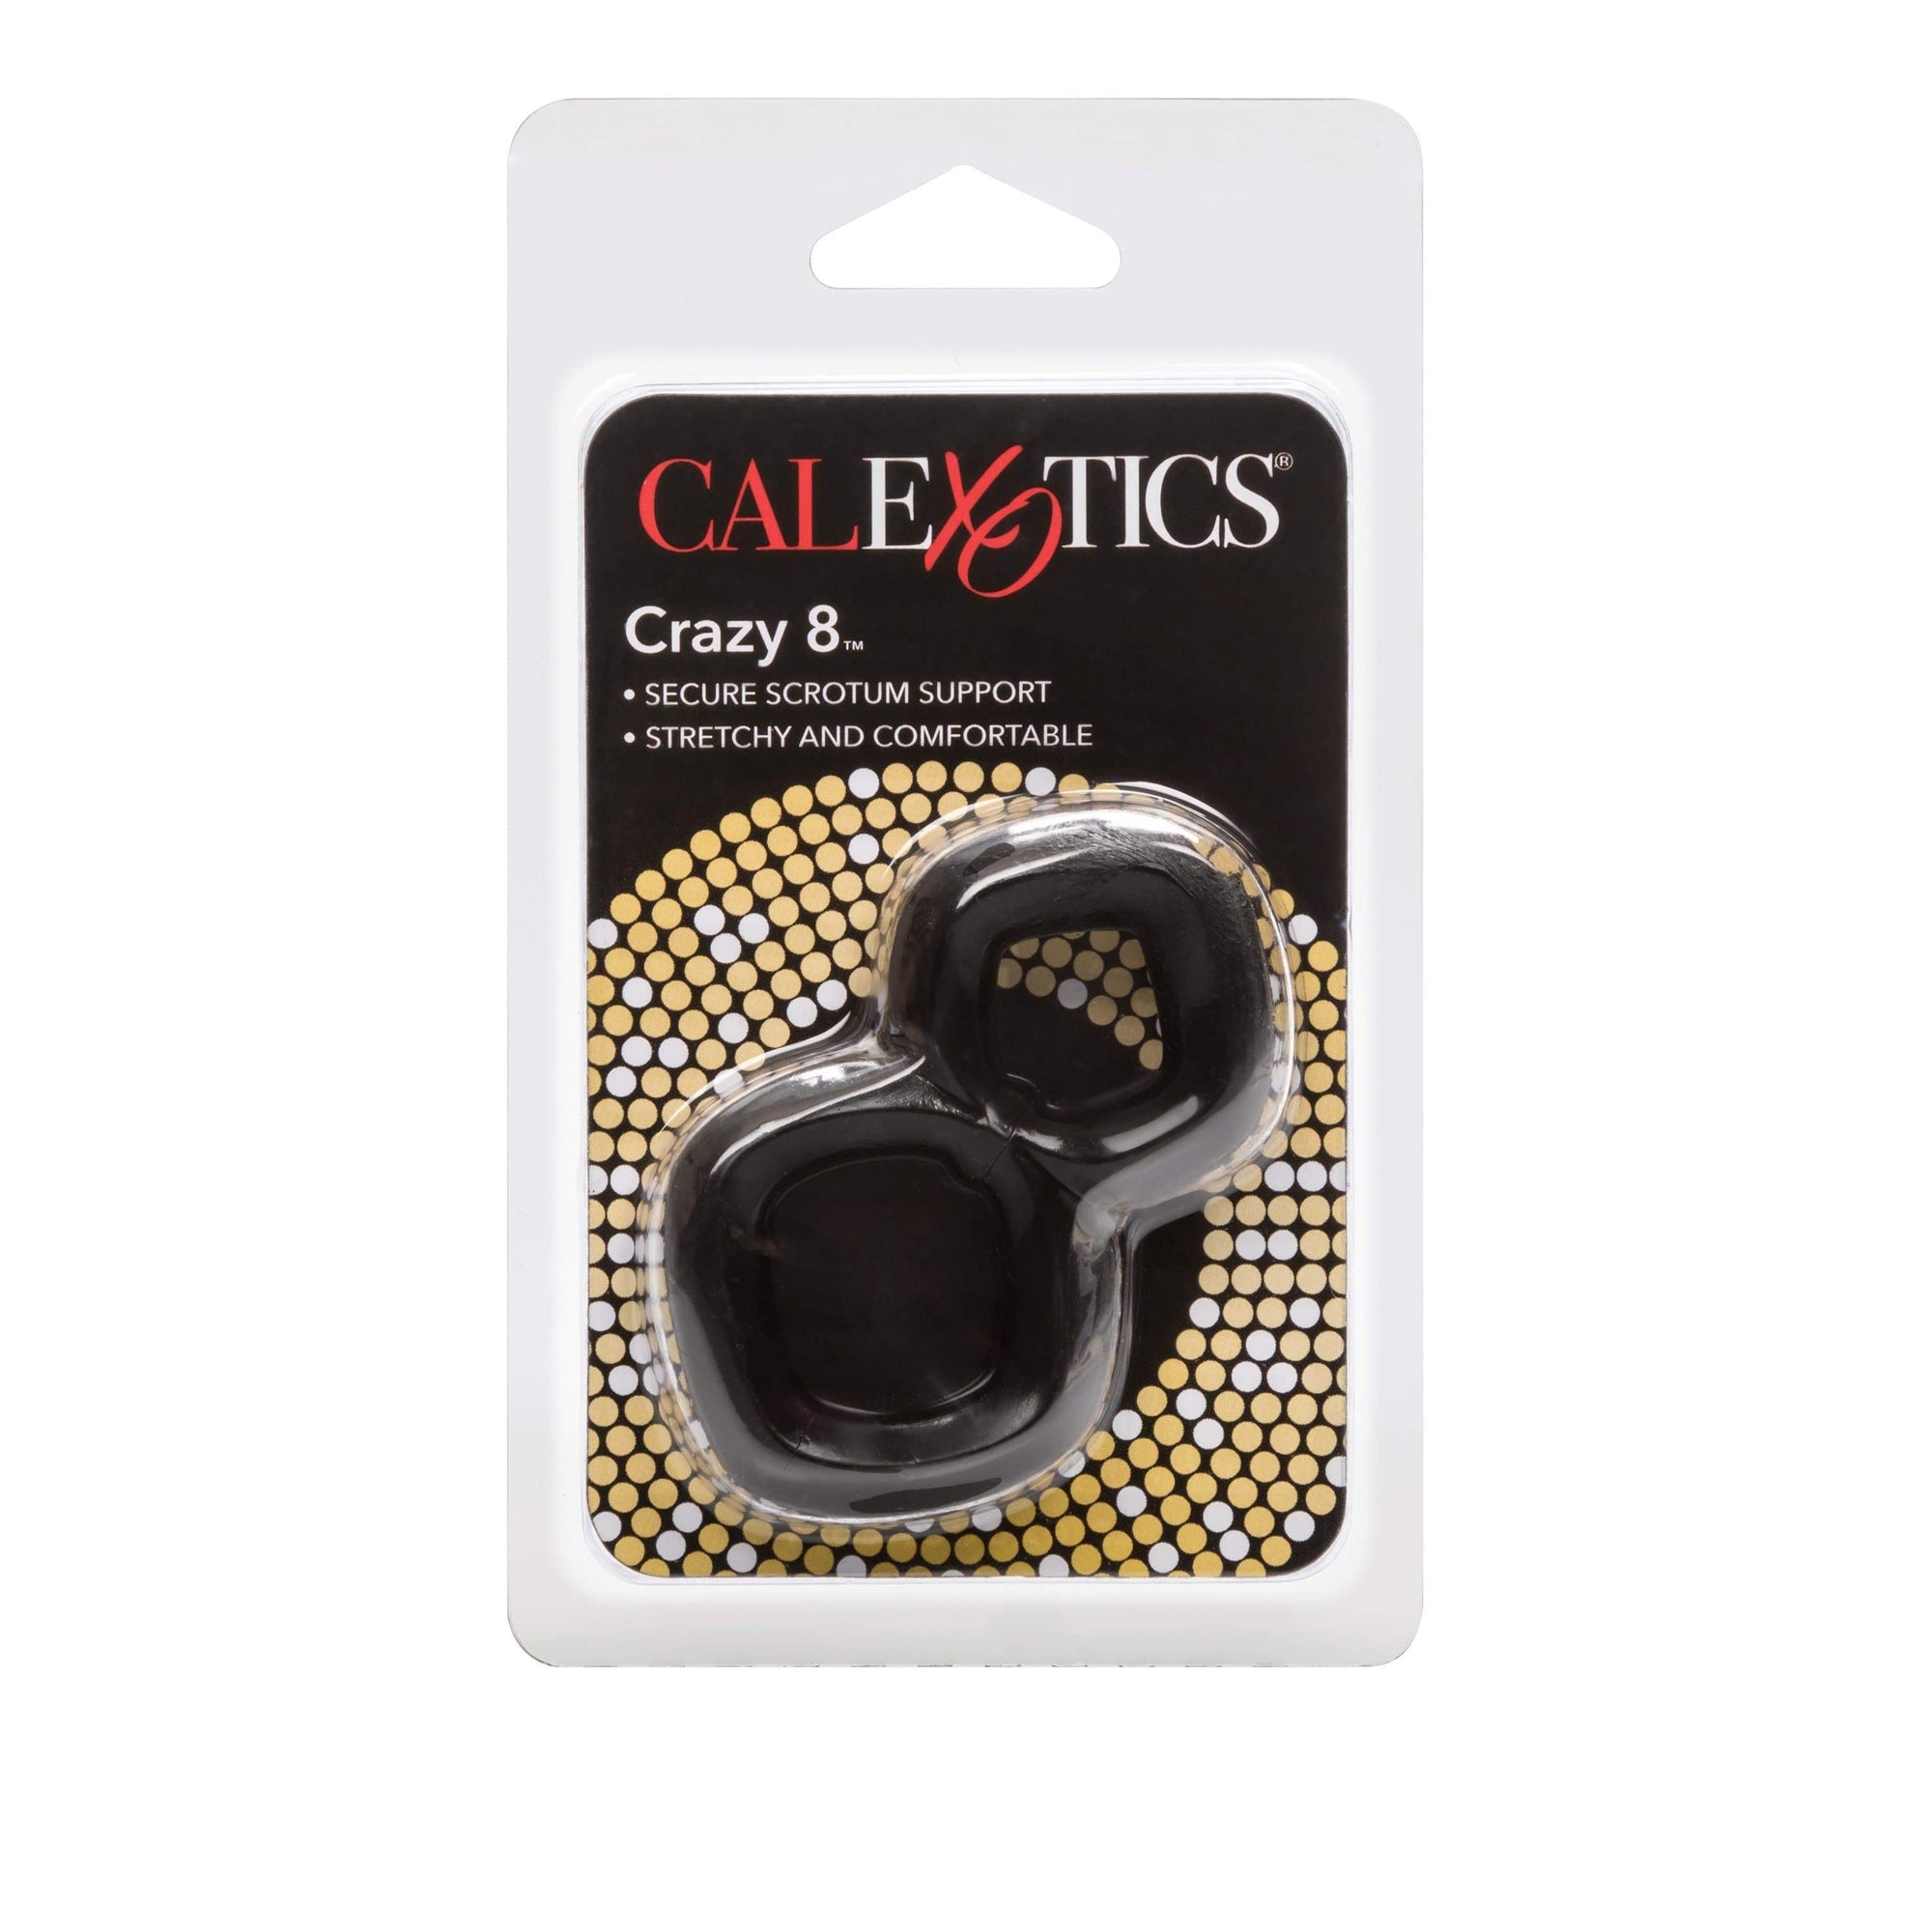 California Exotics - Crazy 8 Cock And Ball Ring (Black) -  Cock Ring (Non Vibration)  Durio.sg